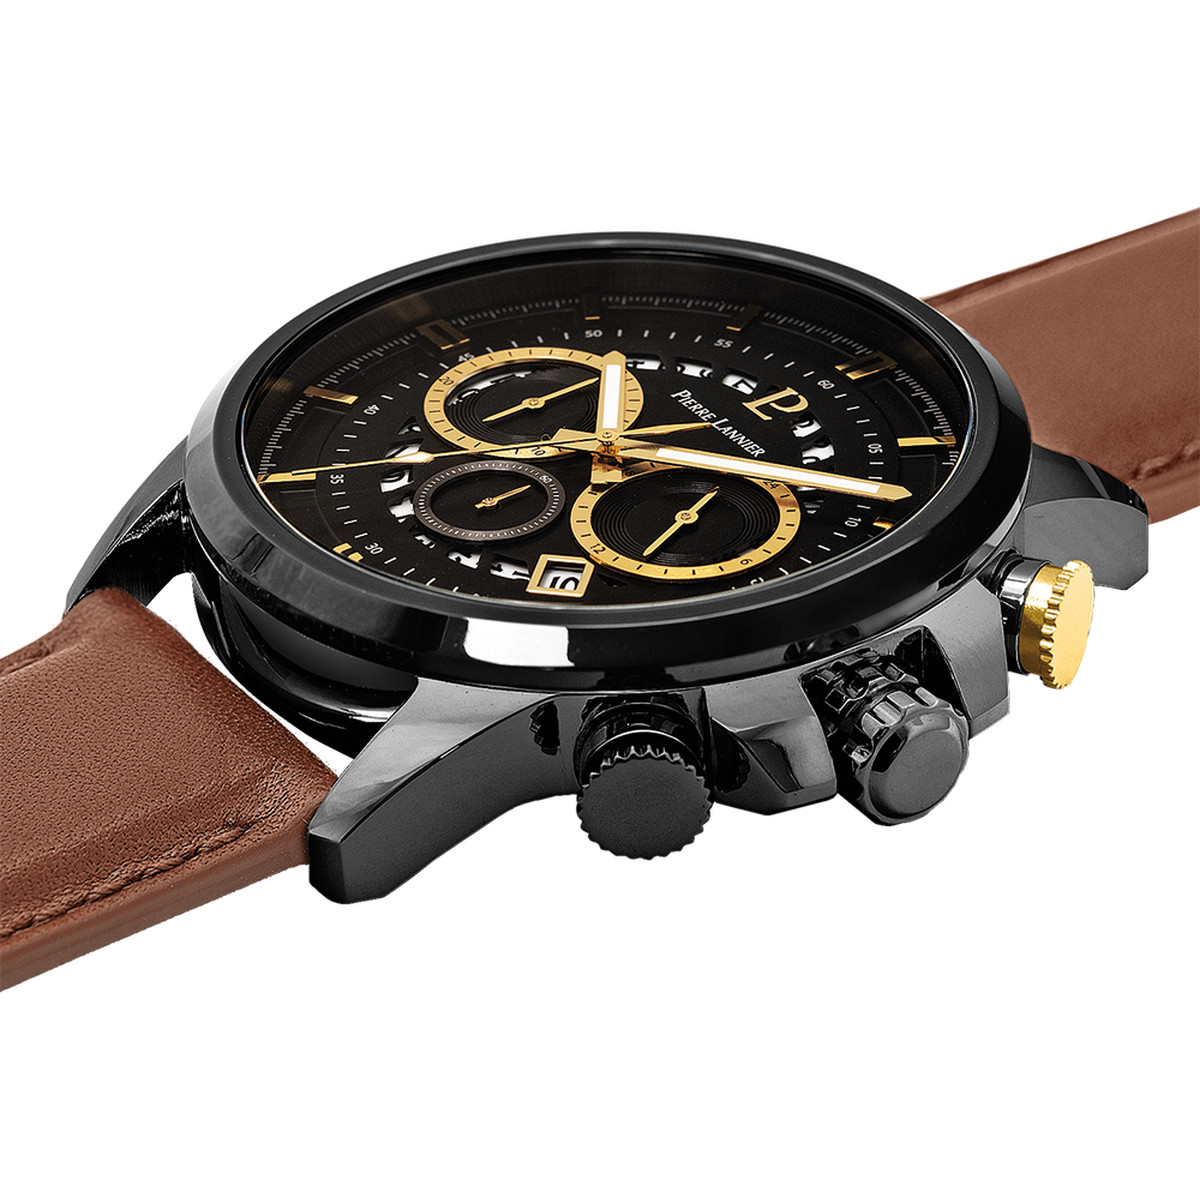 Montre PIERRE LANNIER Sentinelle homme chronographe acier noir  bracelet cuir brun - vue 2